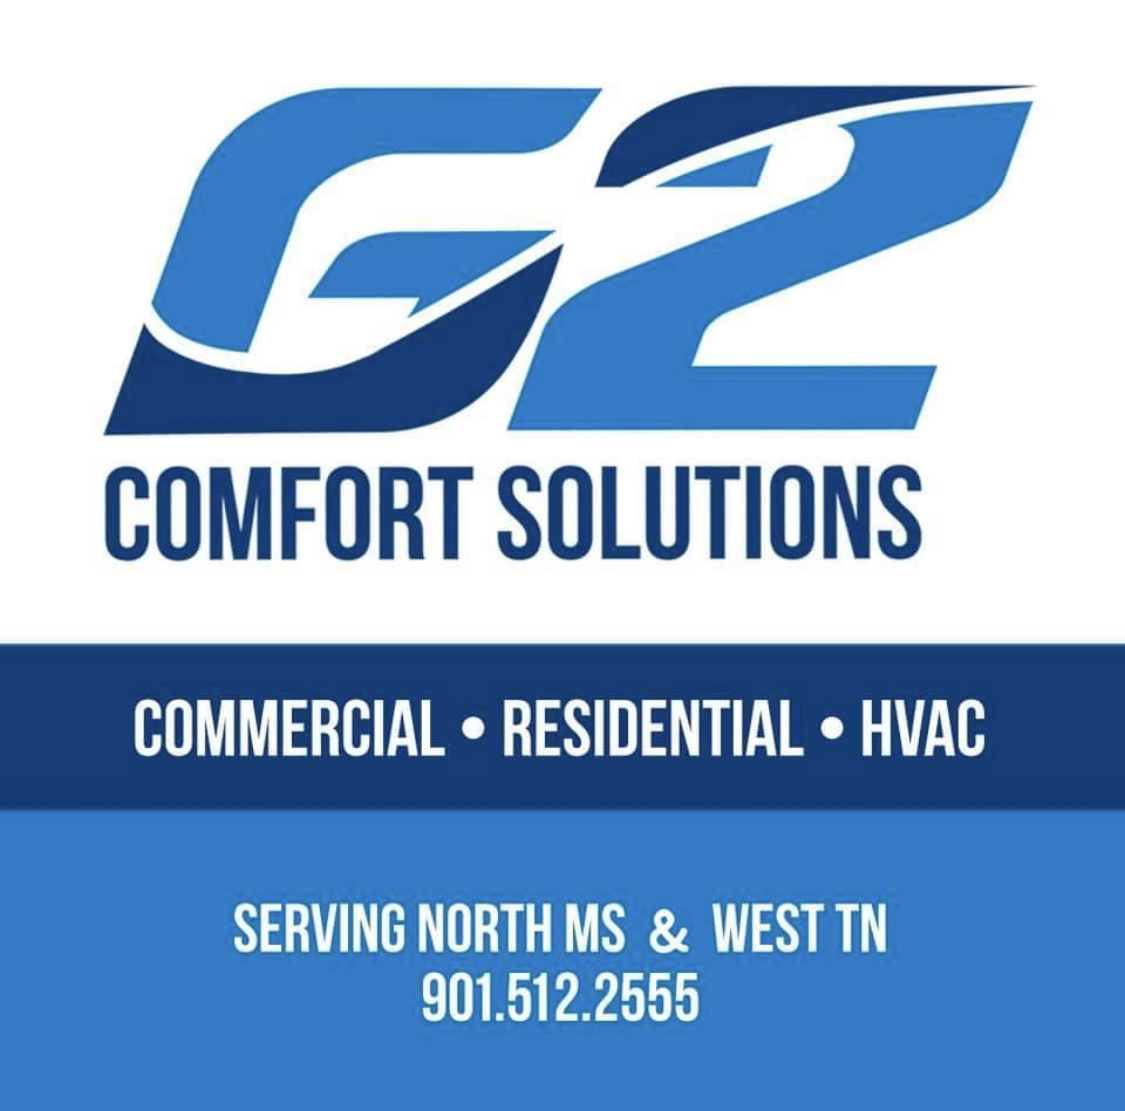 G2 Comfort Solutions, llc 596 Byhalia Creek Farms Rd W, Byhalia Mississippi 38611